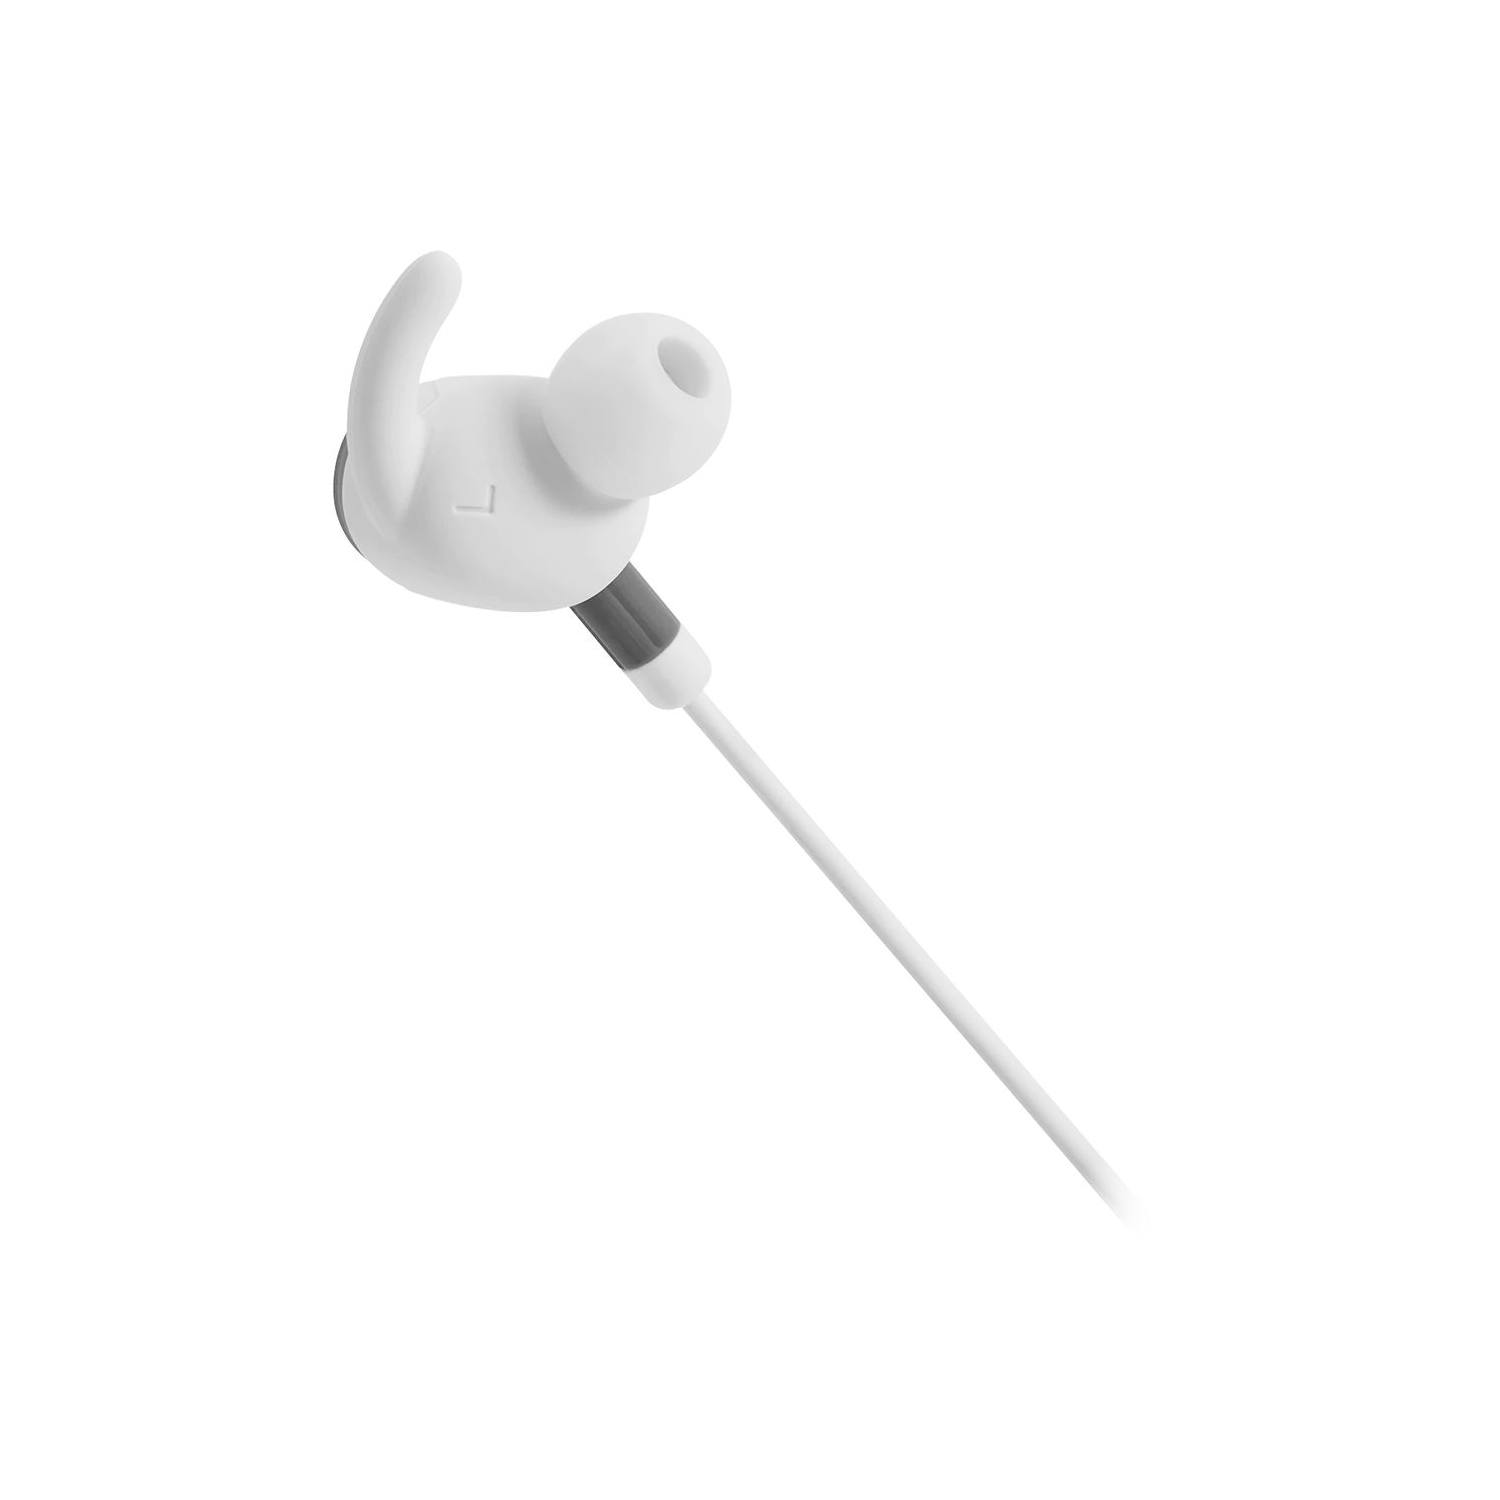 JBL Everest 110GA Wireless In-Ear Headphones